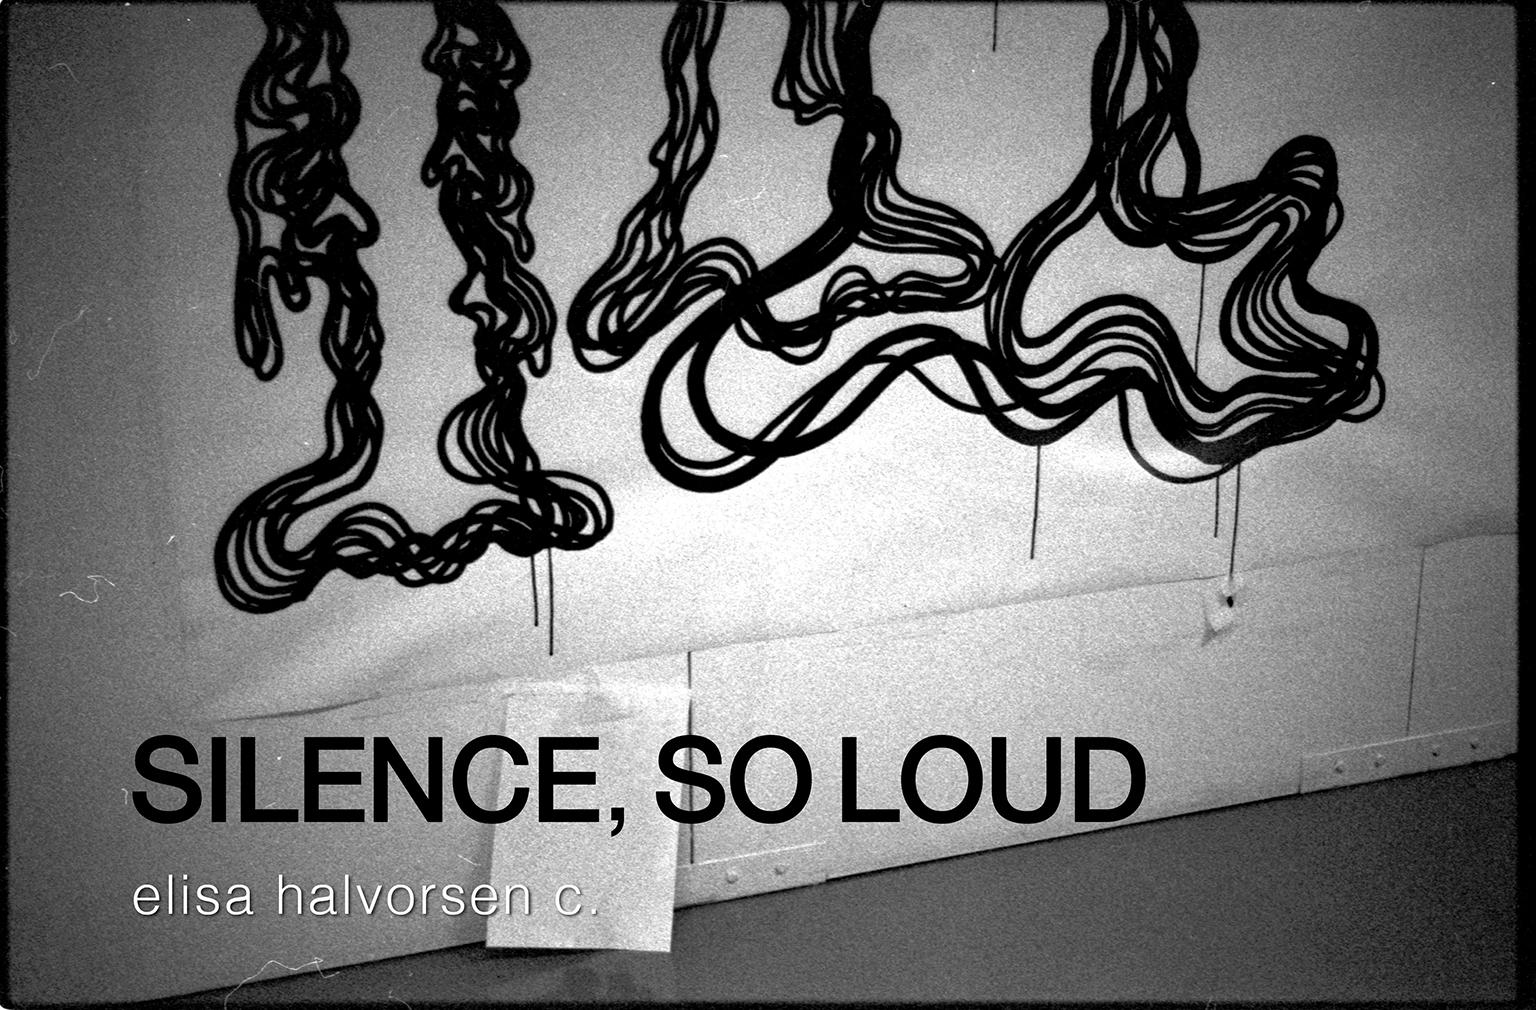 Silence, so loud